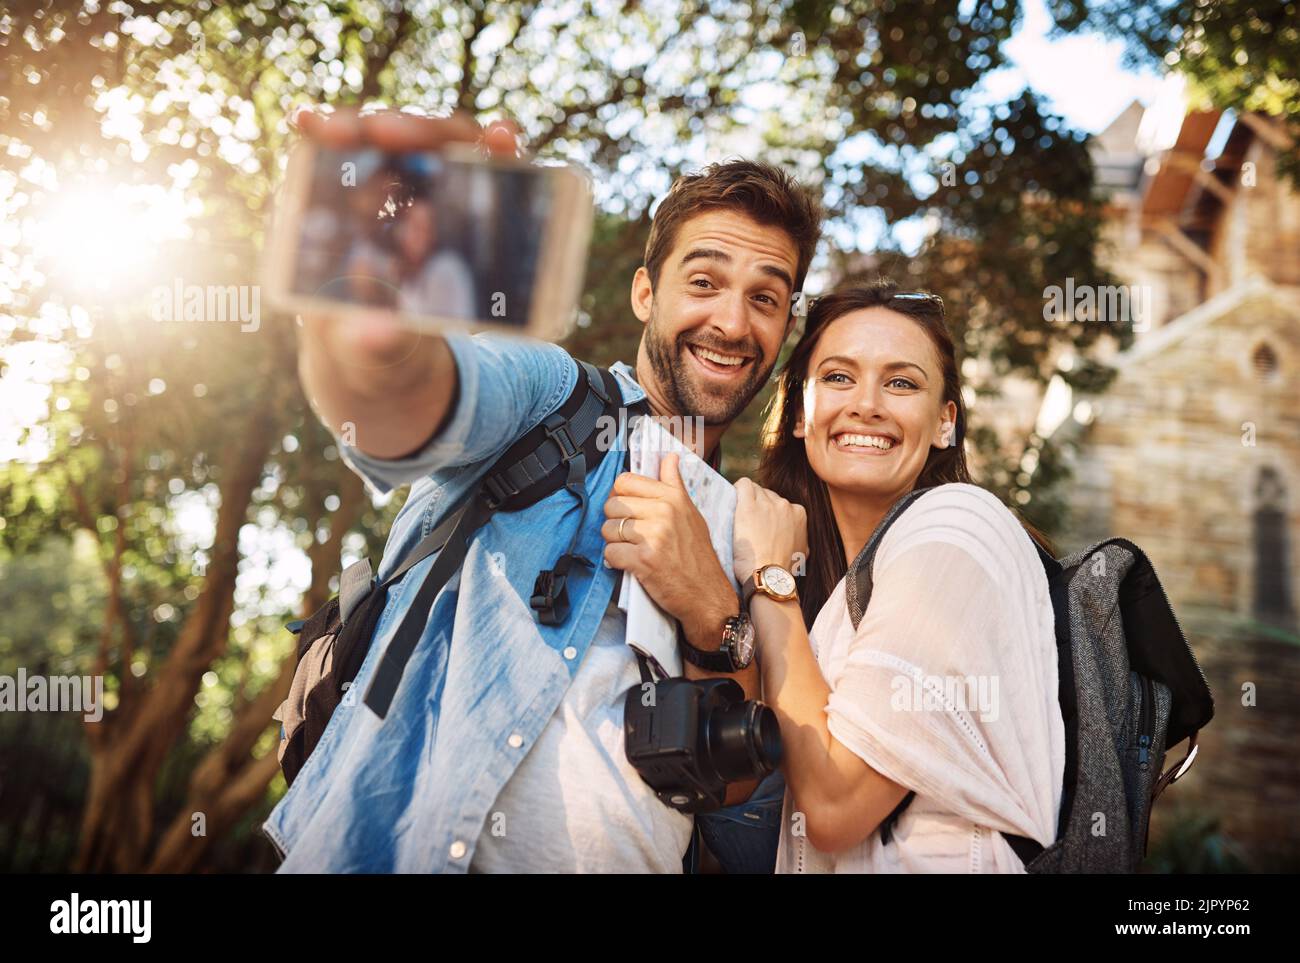 Fotografieren ihrer Reisen. Ein liebevolles junges Paar, das Selfies macht, während es draußen in einem fremden Land ist. Stockfoto